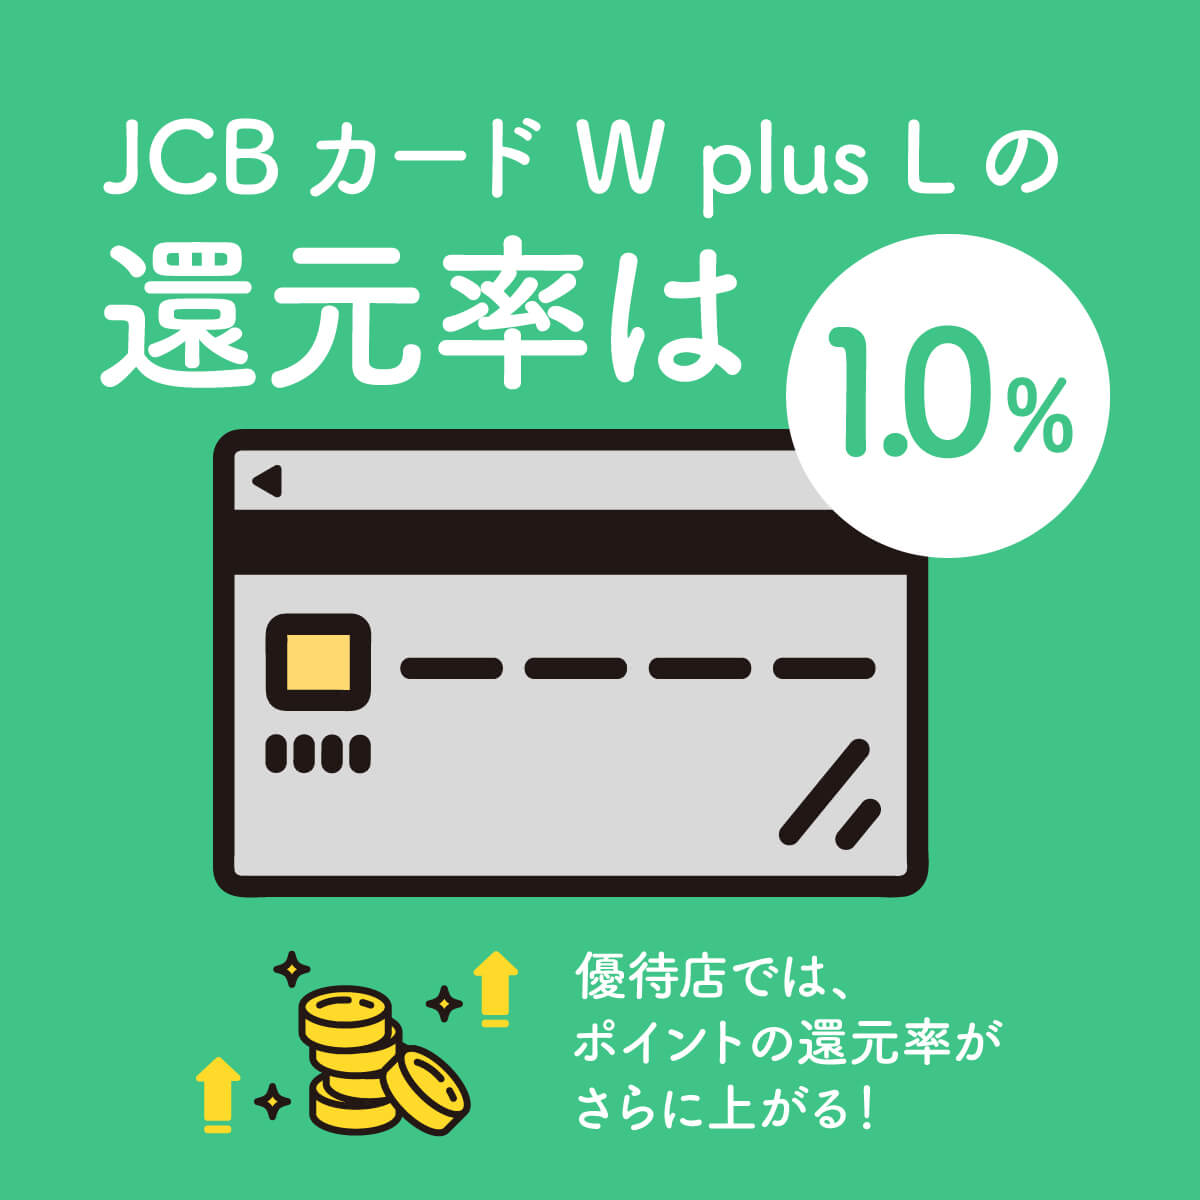 JCBカードW plus Lの基本還元率は1.0%